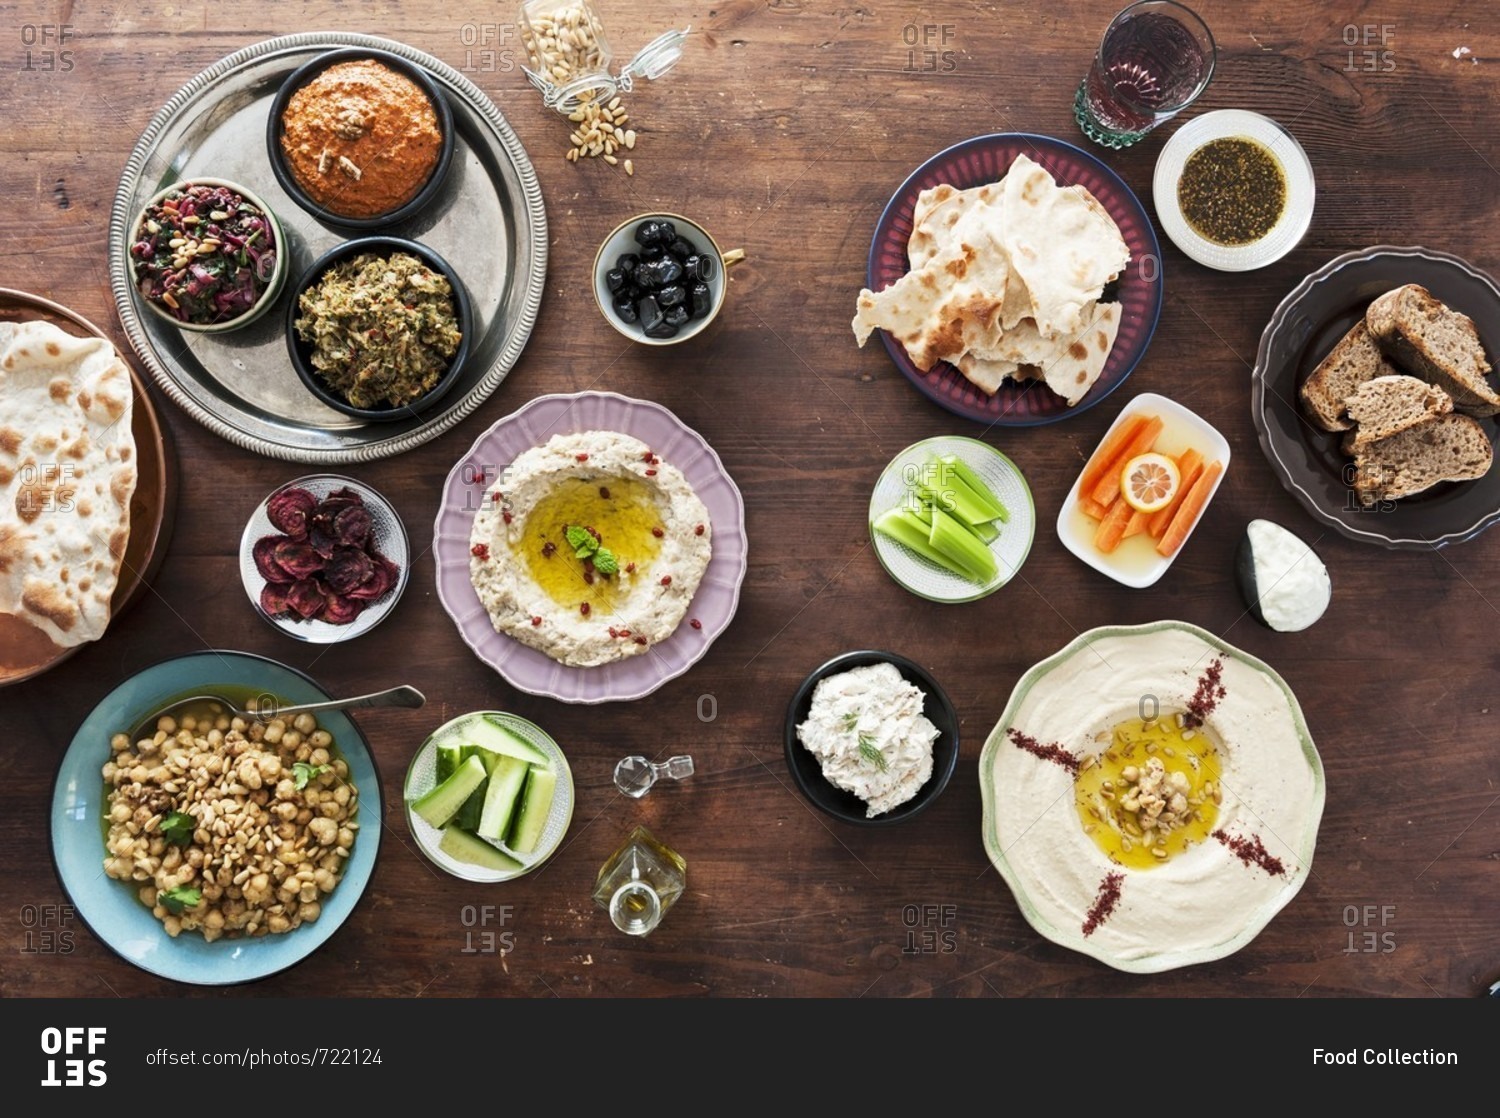 Топ фуд. Кухня ОАЭ. Традиционная кухня ОАЭ. Национальная кухня арабских Эмиратов. Национальные блюда ближнего Востока.